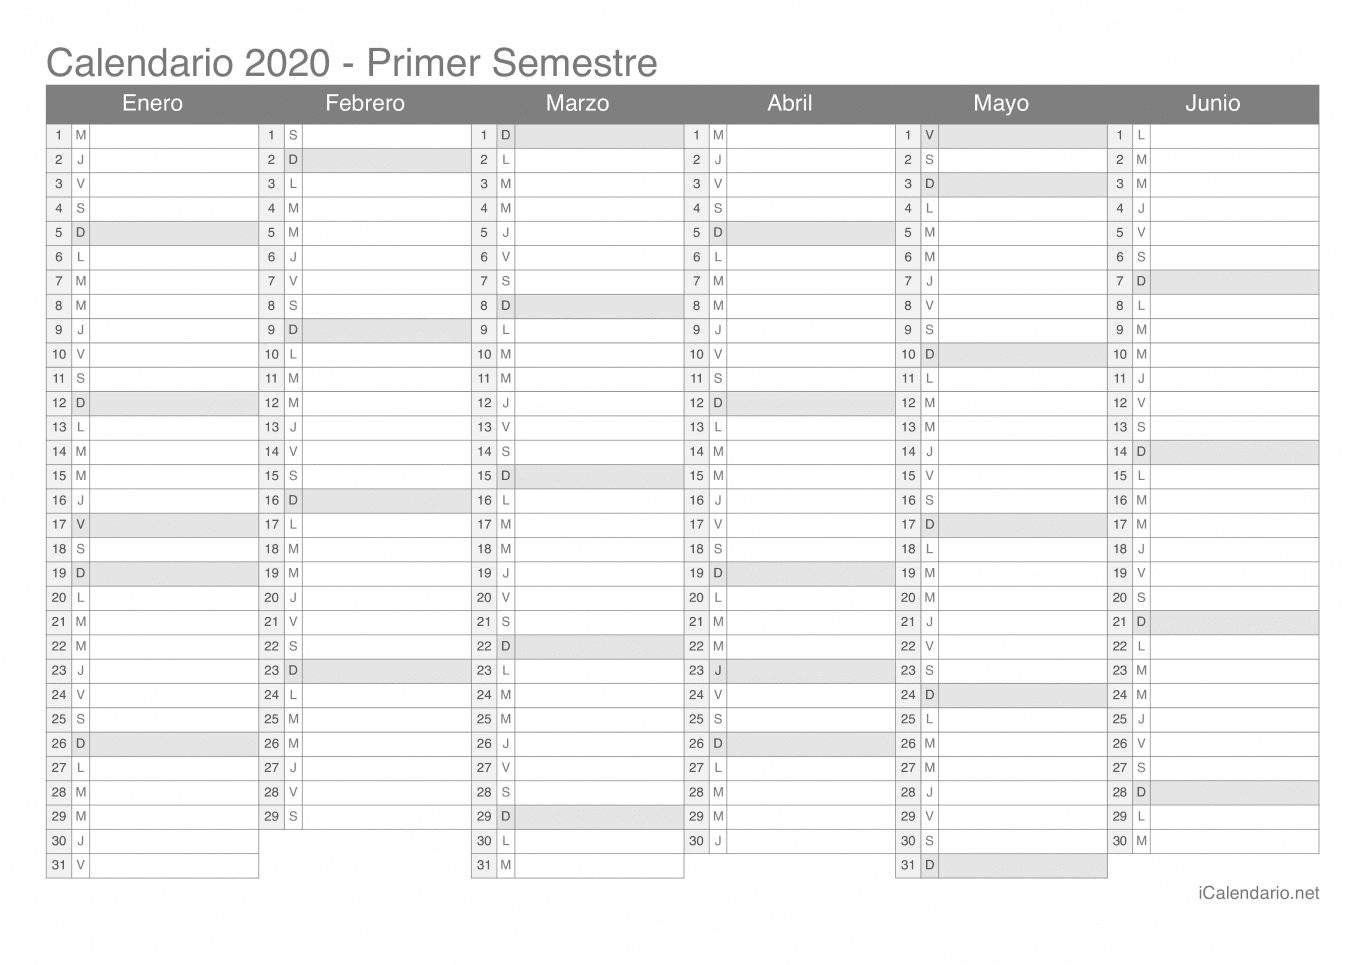 Calendario por semestre 2020